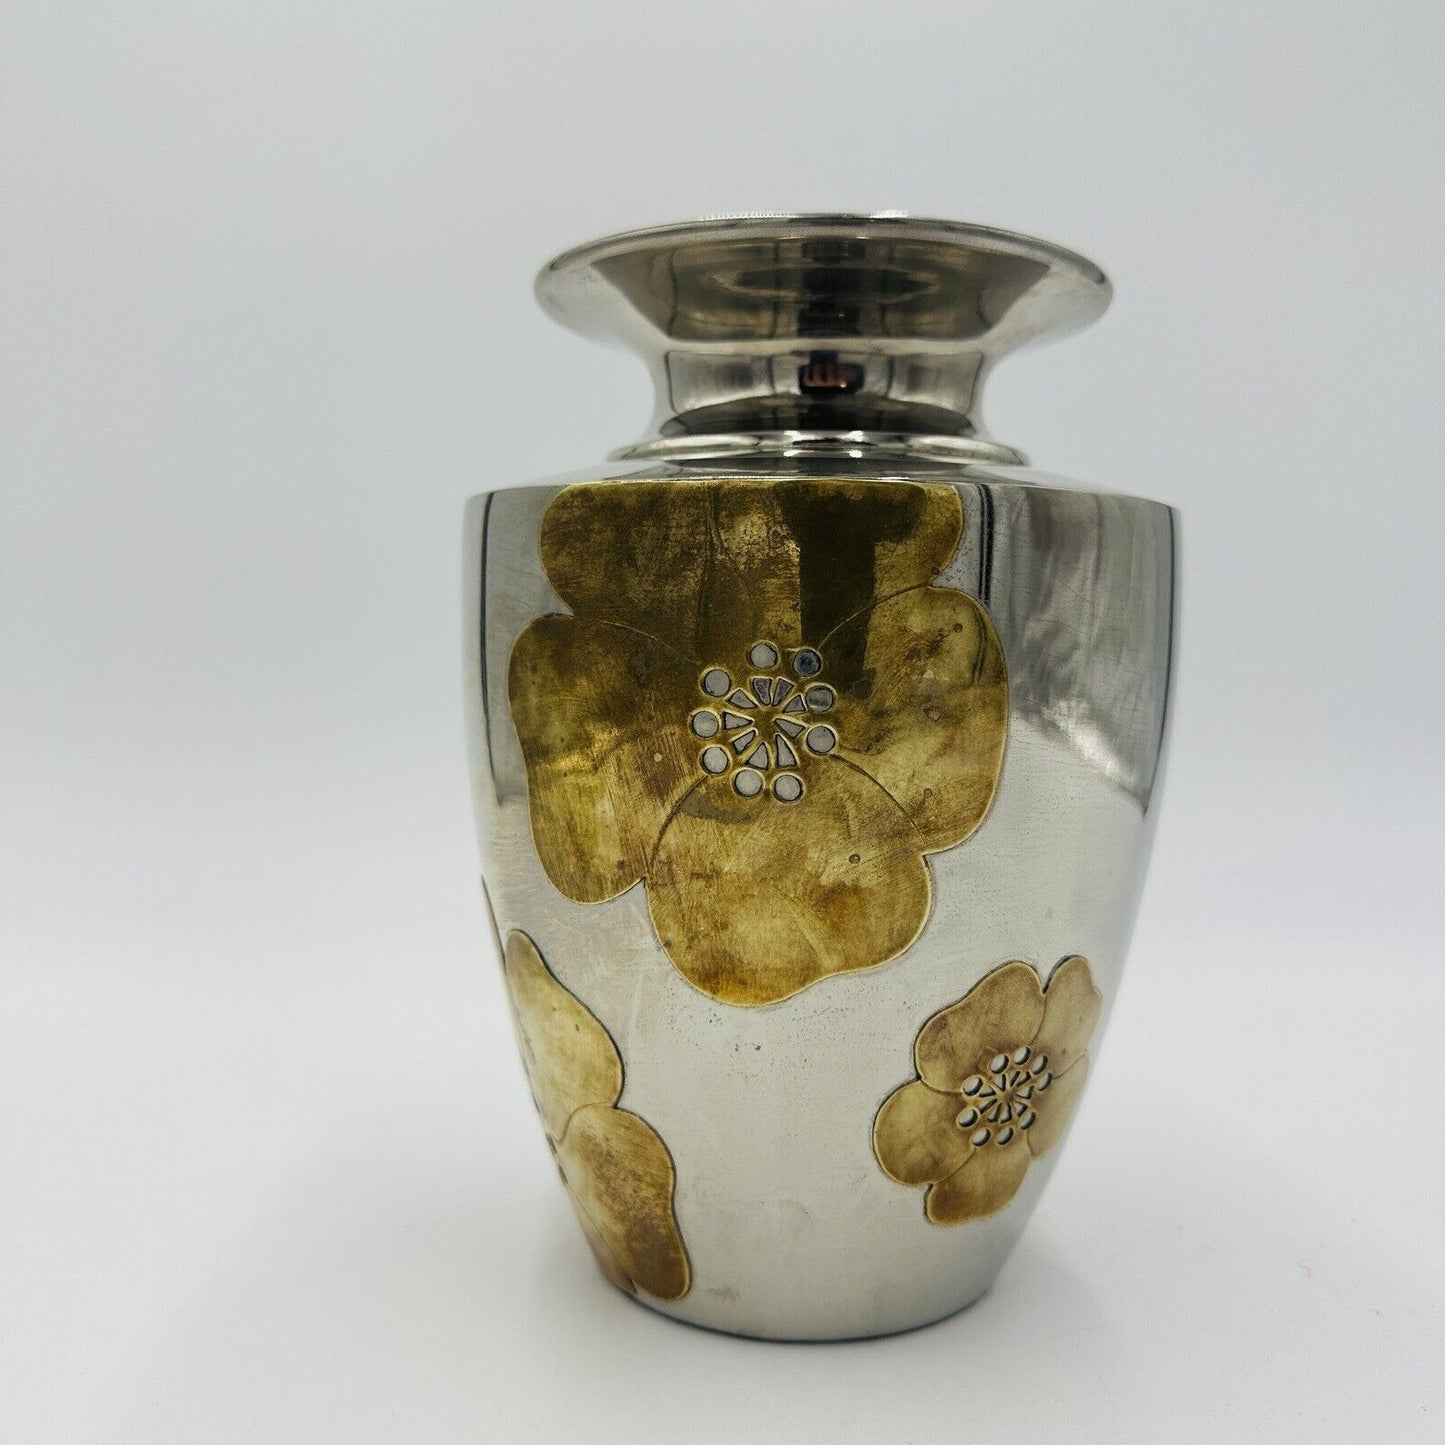 Ethan Allen Home Interior Nickel & Brass Vase Mid Century Modern Applied Flower